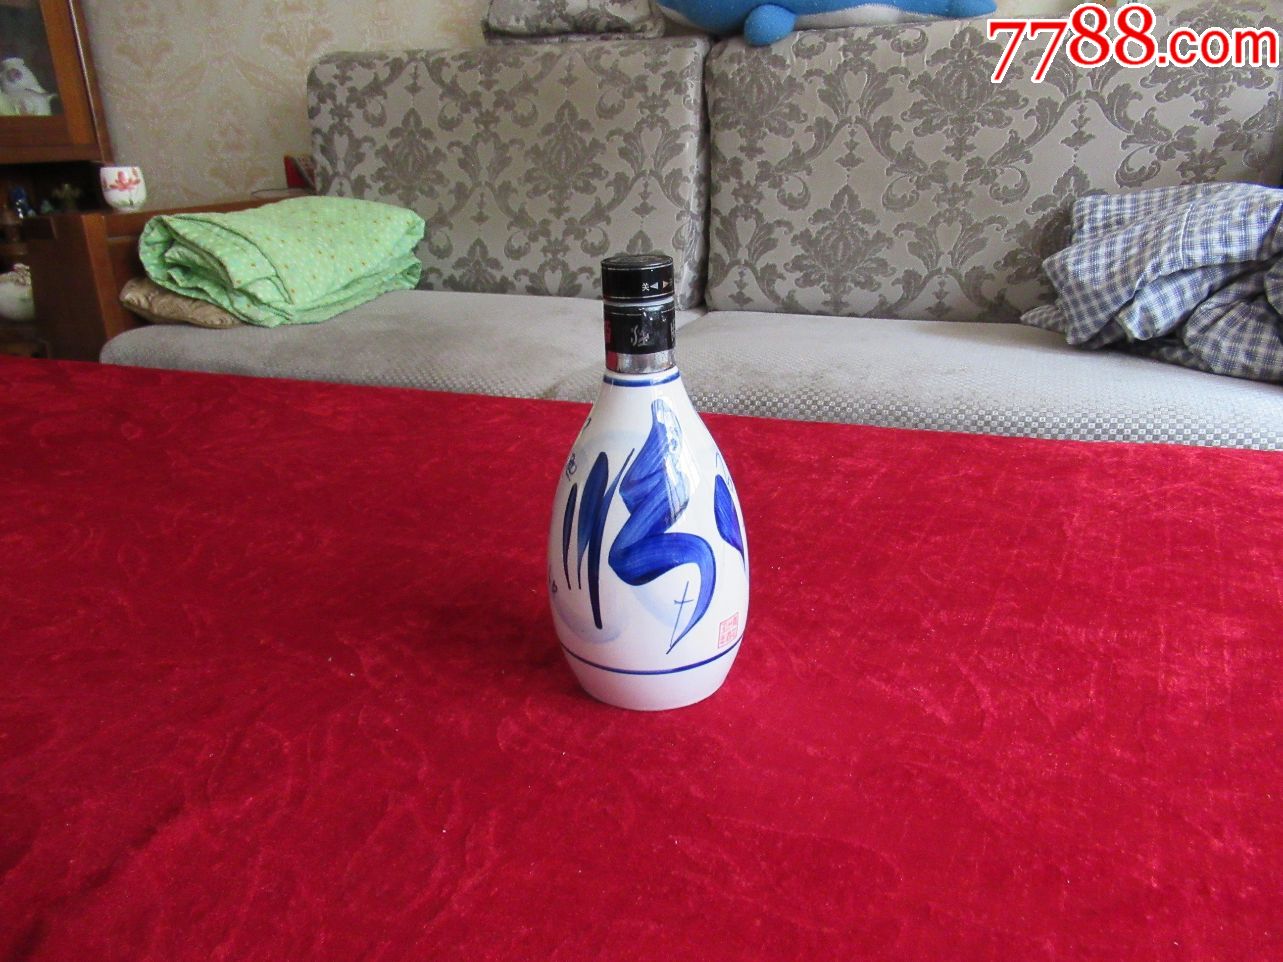 【酒瓶收藏】青花汾酒30年白圈黑盖杏花村屋图一斤装酒瓶(完美品相)